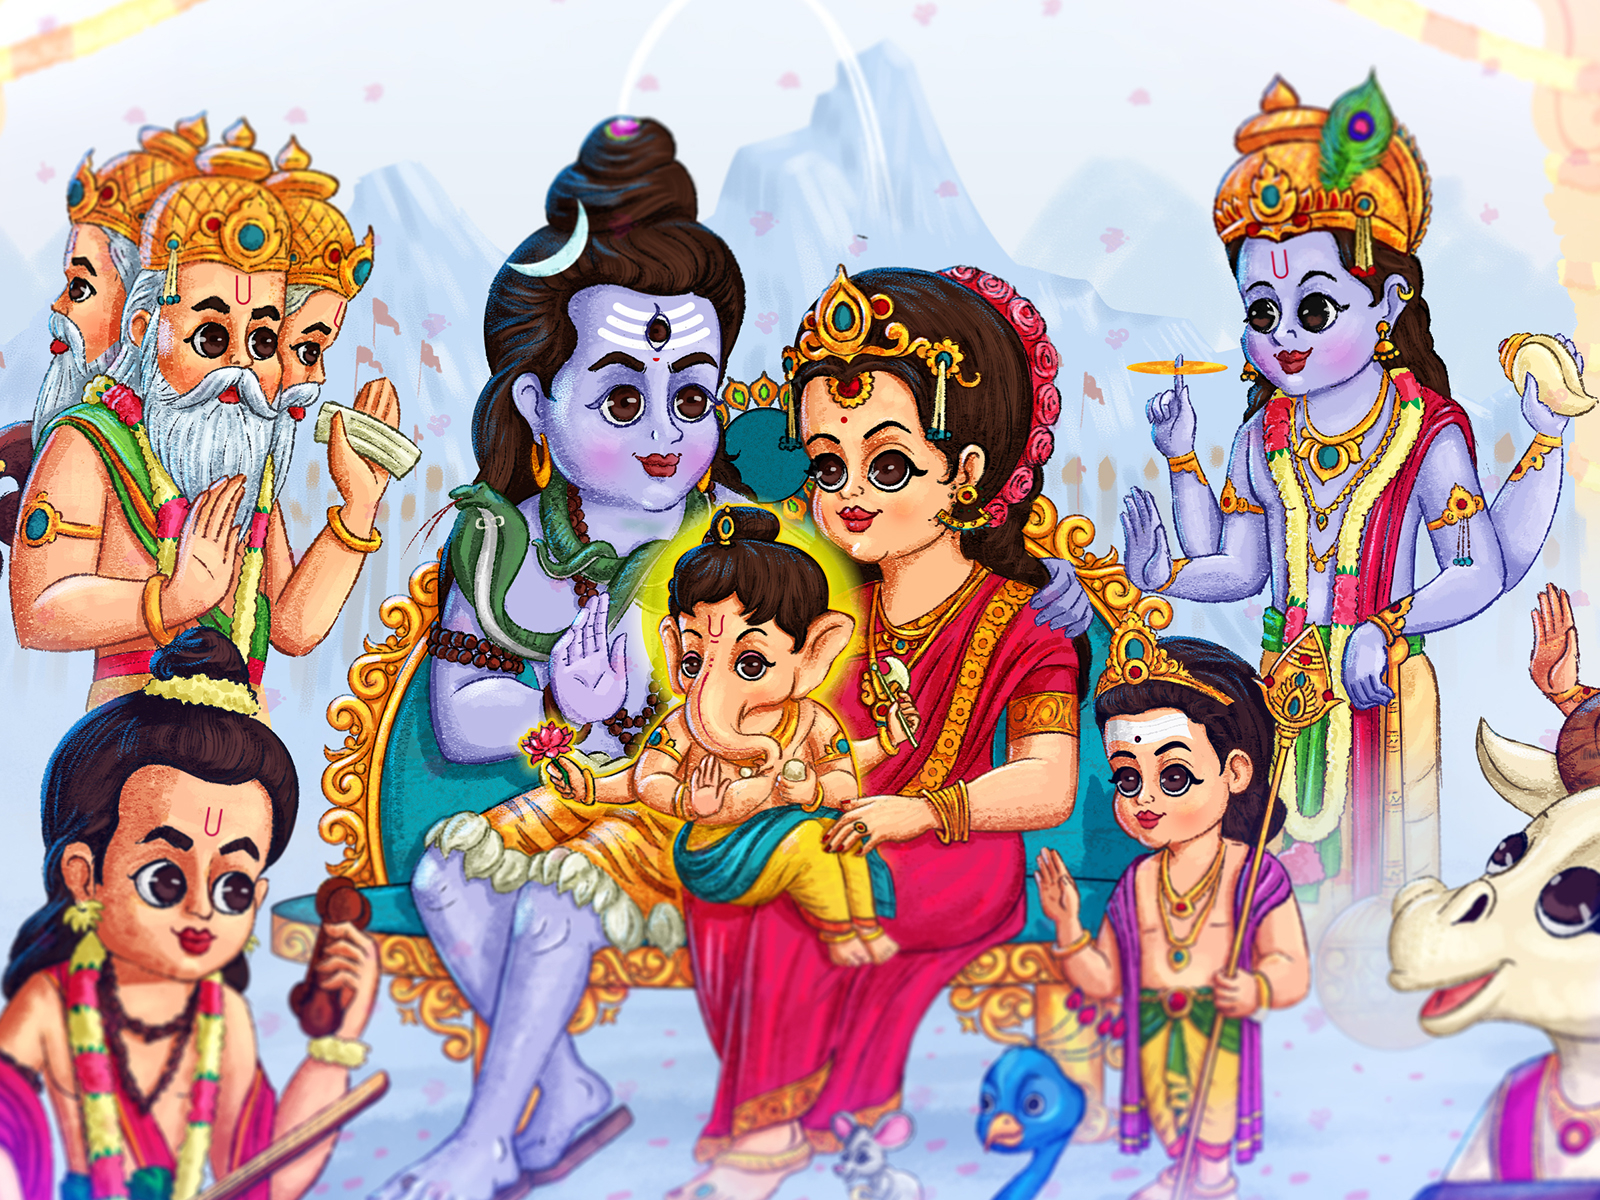 lord Shiva family cartoon illustration by artAmaz® on Dribbble